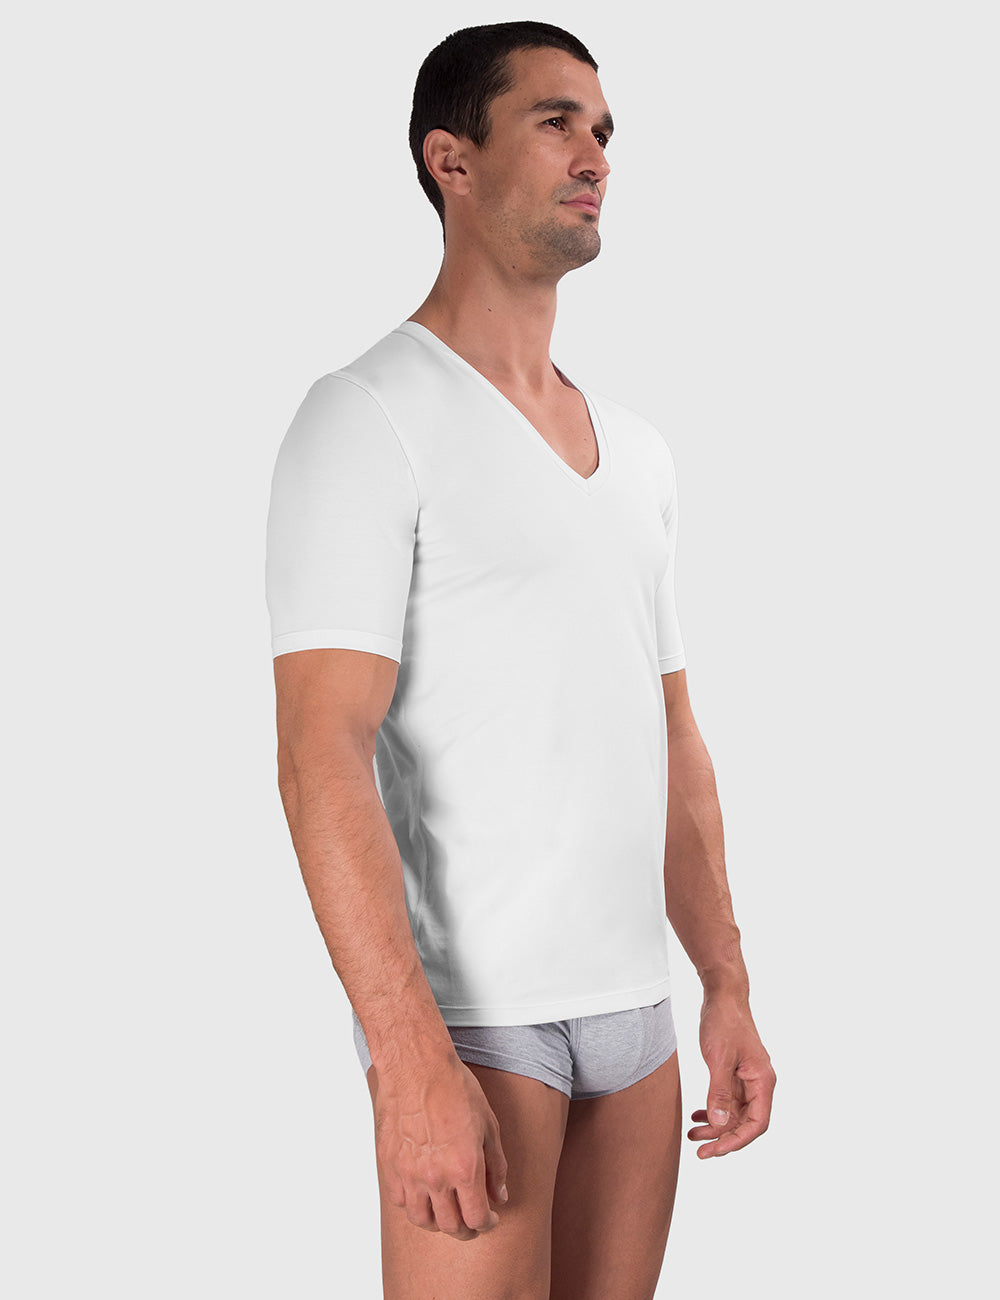 V-Neck Compression Shirt For Men, Get Free Shipping